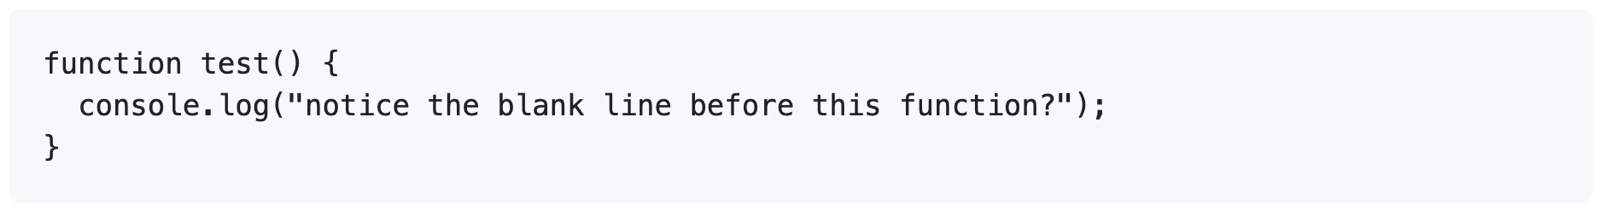 3 重のバッククォートによってコード ブロックが未加工の形式でレンダリングされることを示す、GitHub Markdown をレンダリングしたスクリーンショット。 ブロックは "function test() {" で始まっています。